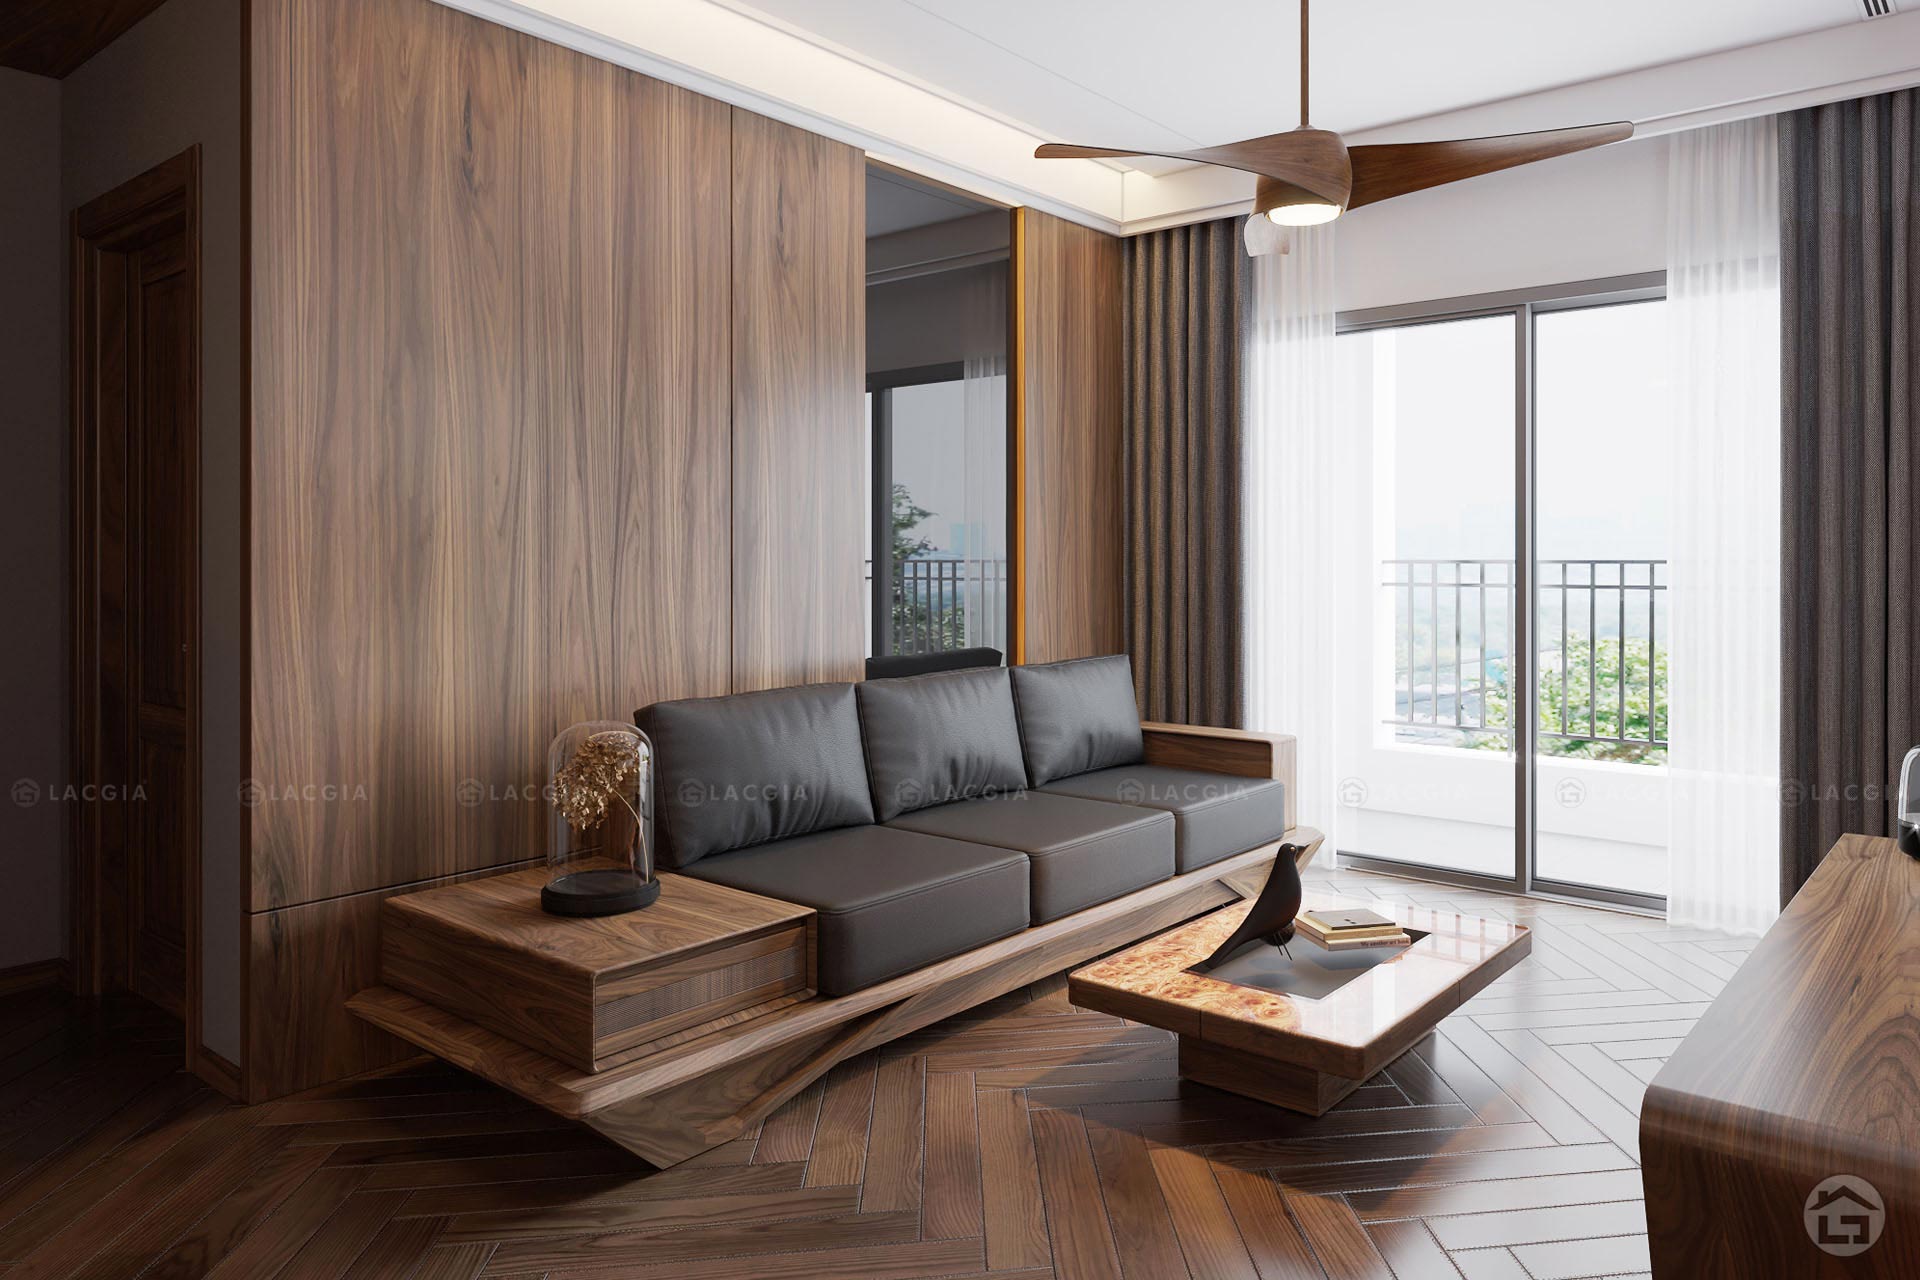 Sự mộc mạc và sang trọng của bộ sofa gỗ tự nhiên cho phòng khách